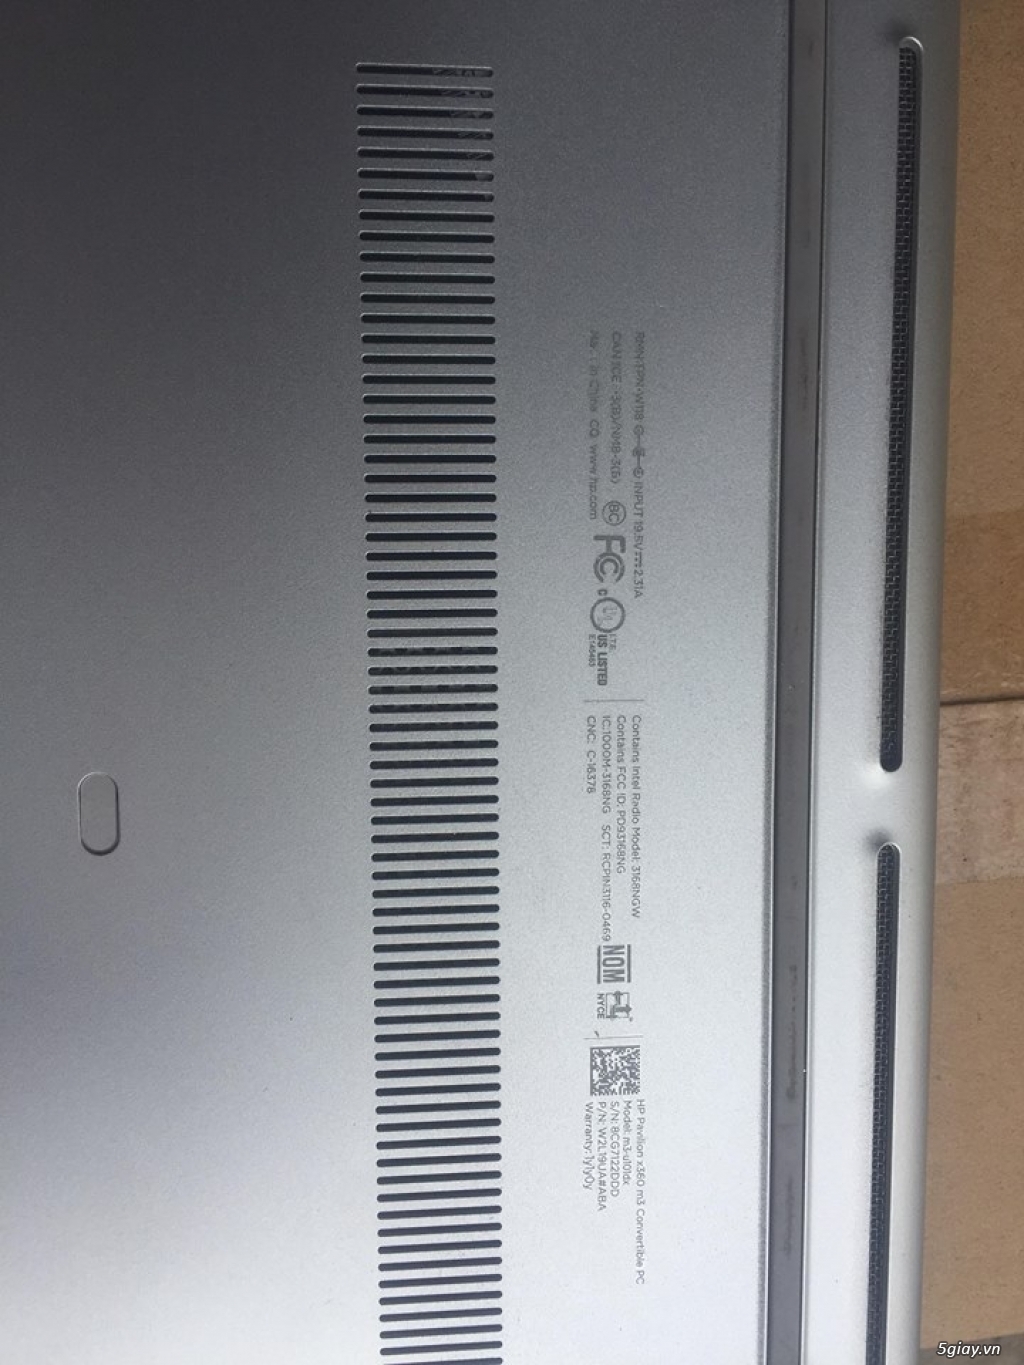 Laptop HP Pavilion x360 M3 i3 7100u Cảm ứng Gập 360 Độ giá rẻ - 1